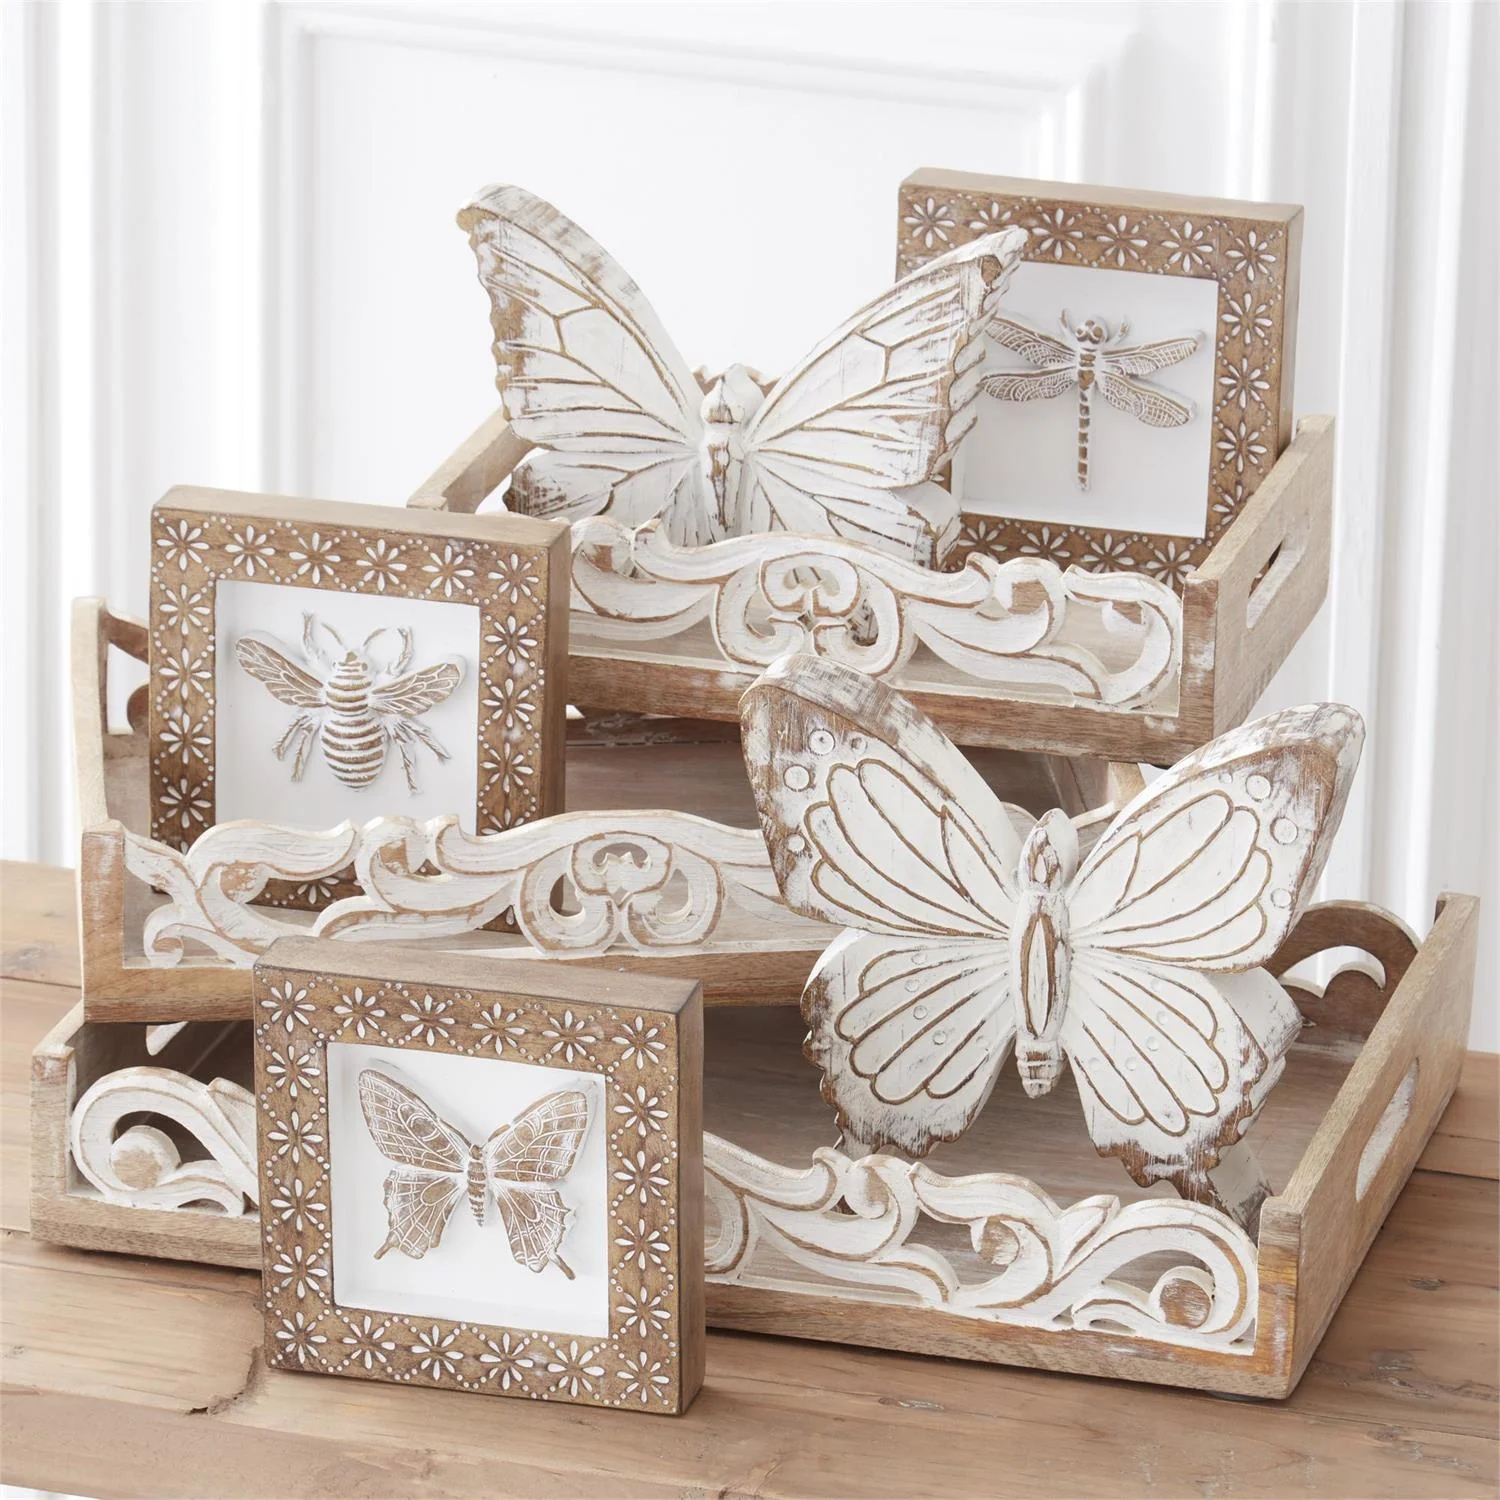 a group of wooden butterflies